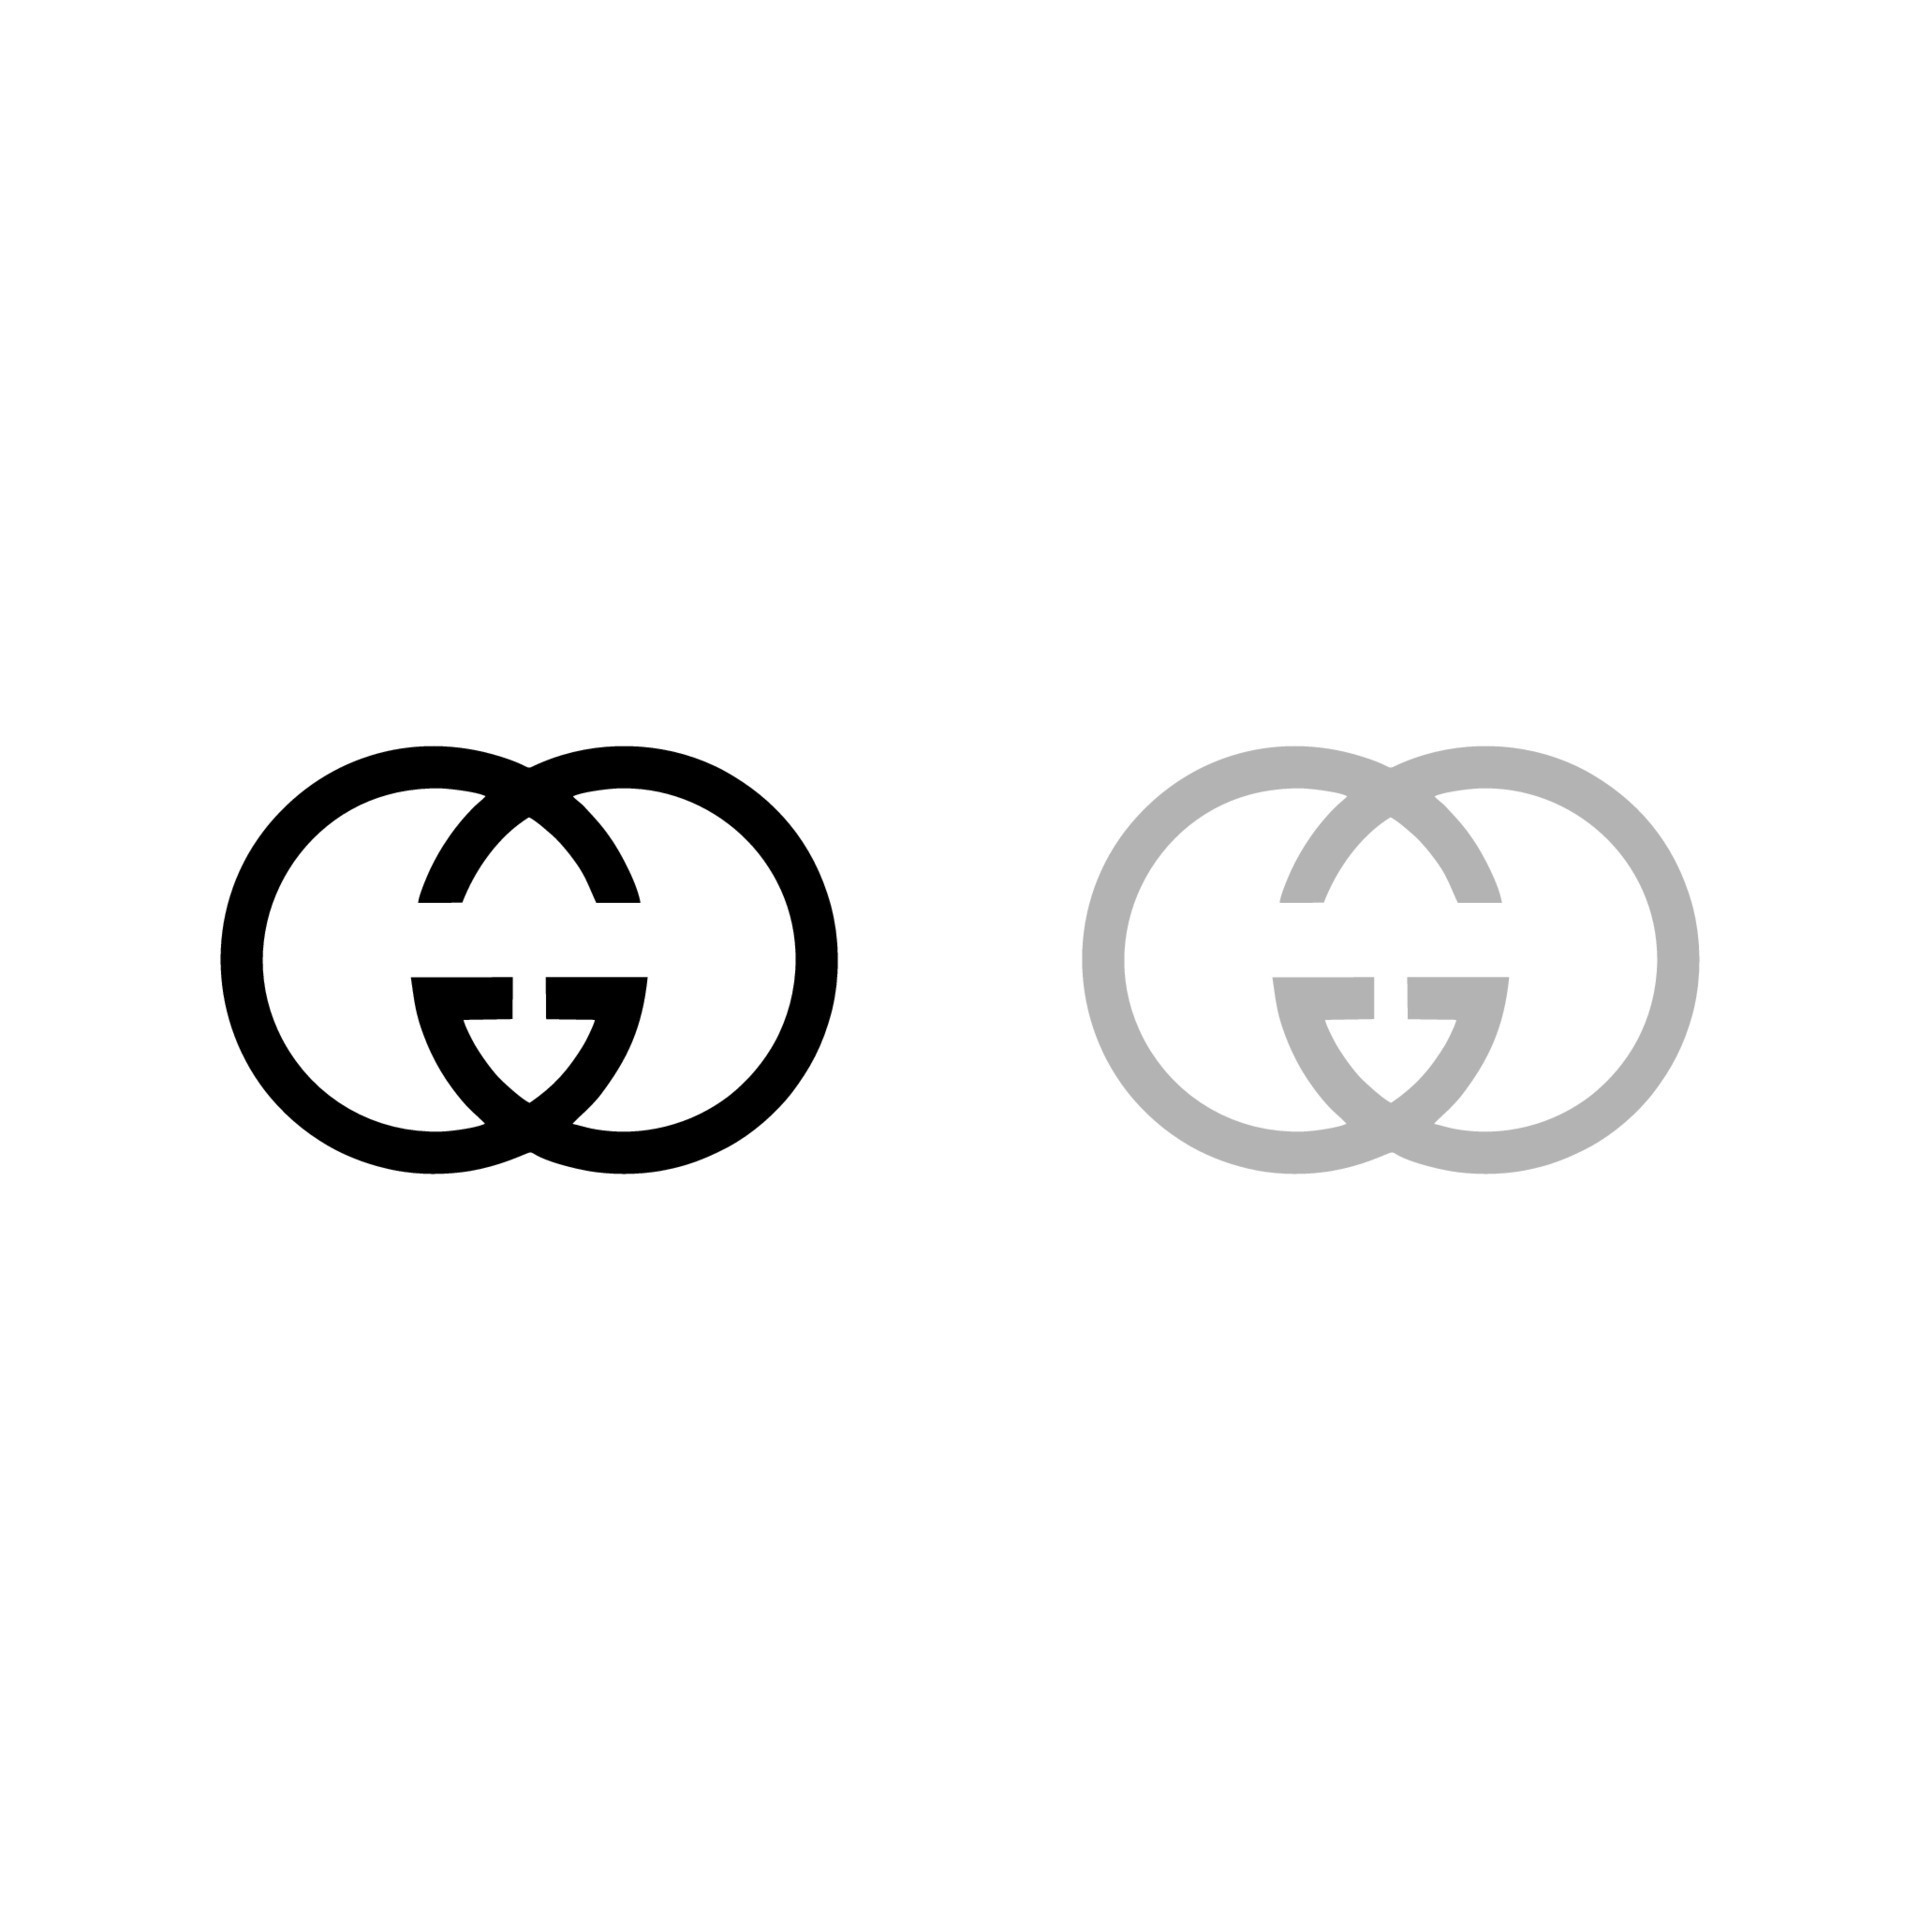 Gucci logo vector, Gucci icon free vector 20190479 Vector Art at Vecteezy